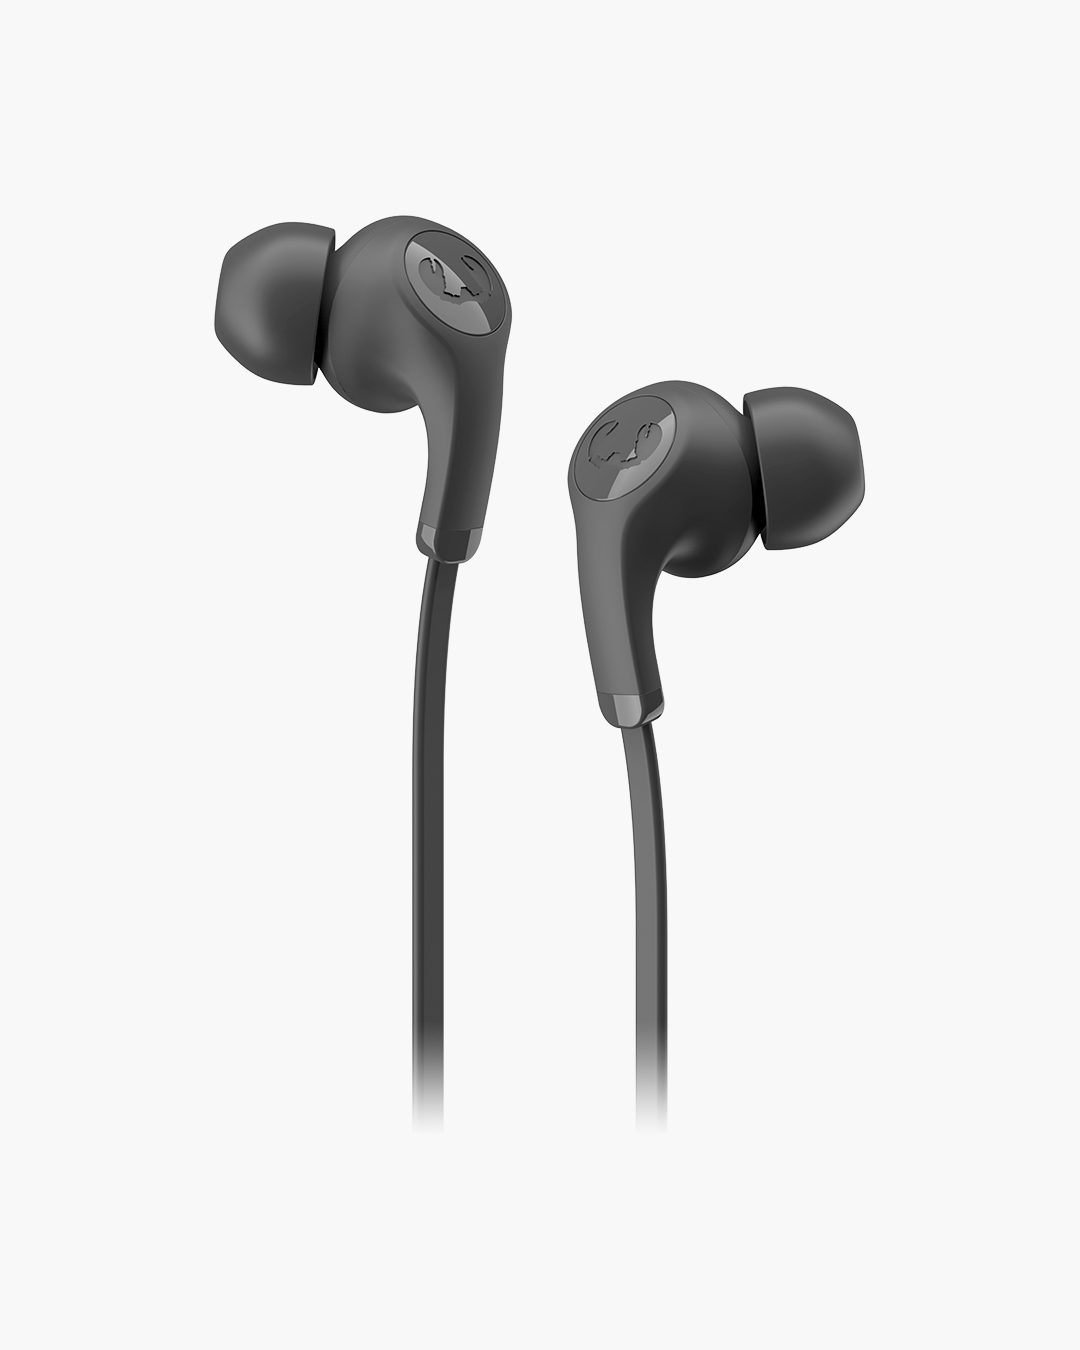 Fresh 'n Rebel - Flow - In-ear headphones with ear tip - Storm Grey